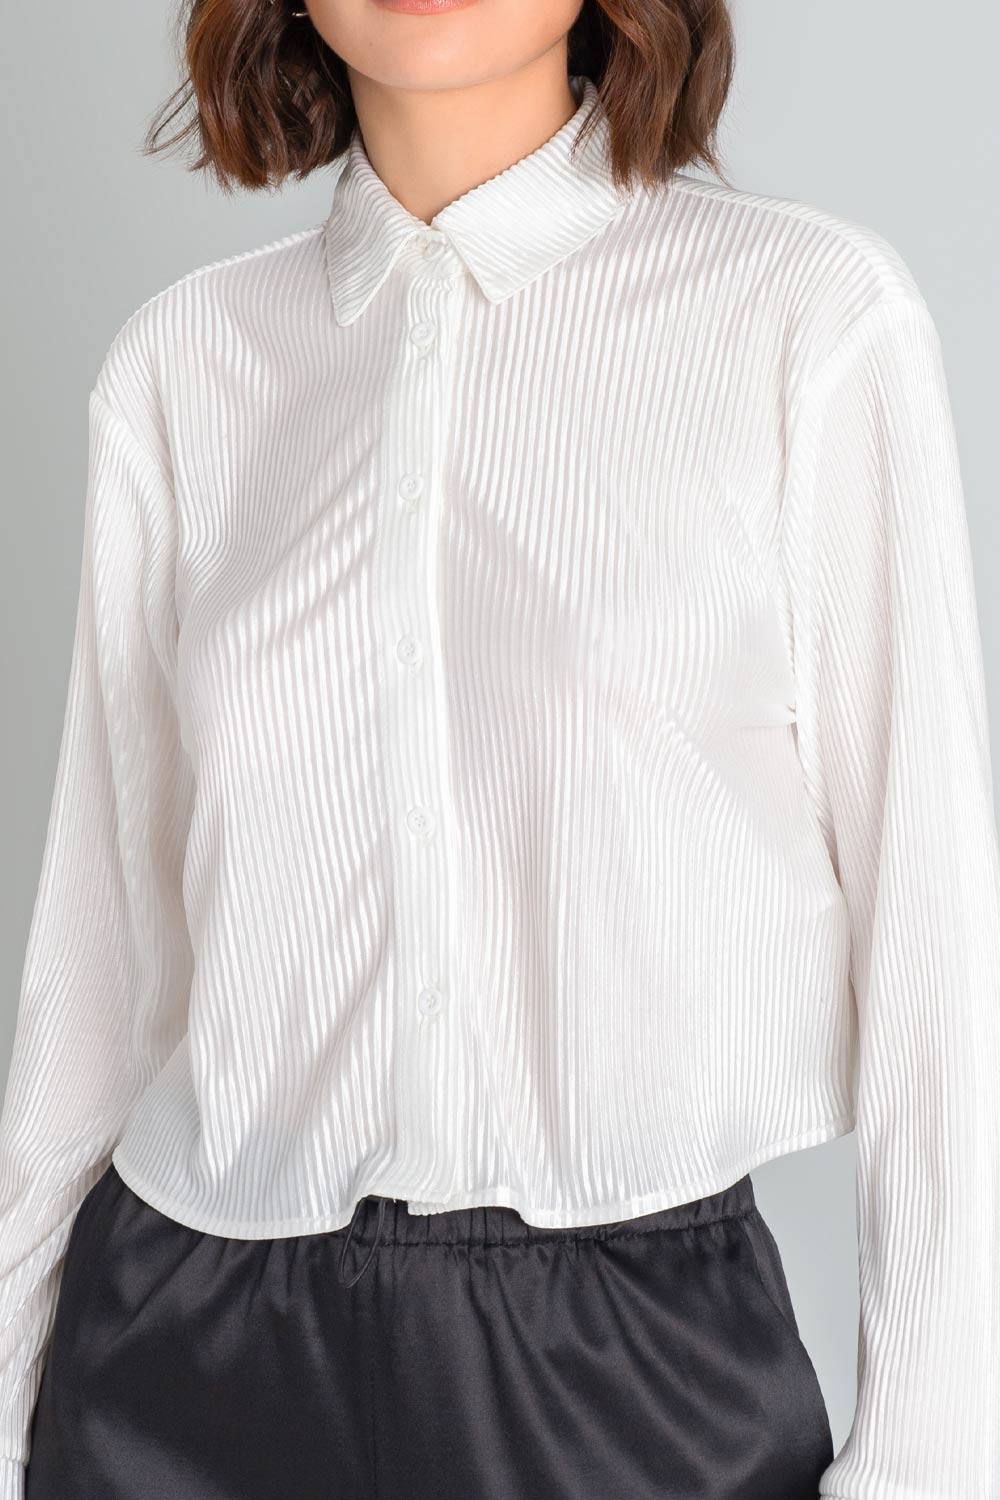 Camisa corta satinada de fit recto, manga larga con puño abotonado, cuello camisero y cierre frontal con hilera de botones en contraste. Detalle de plisado en textura de tejido.